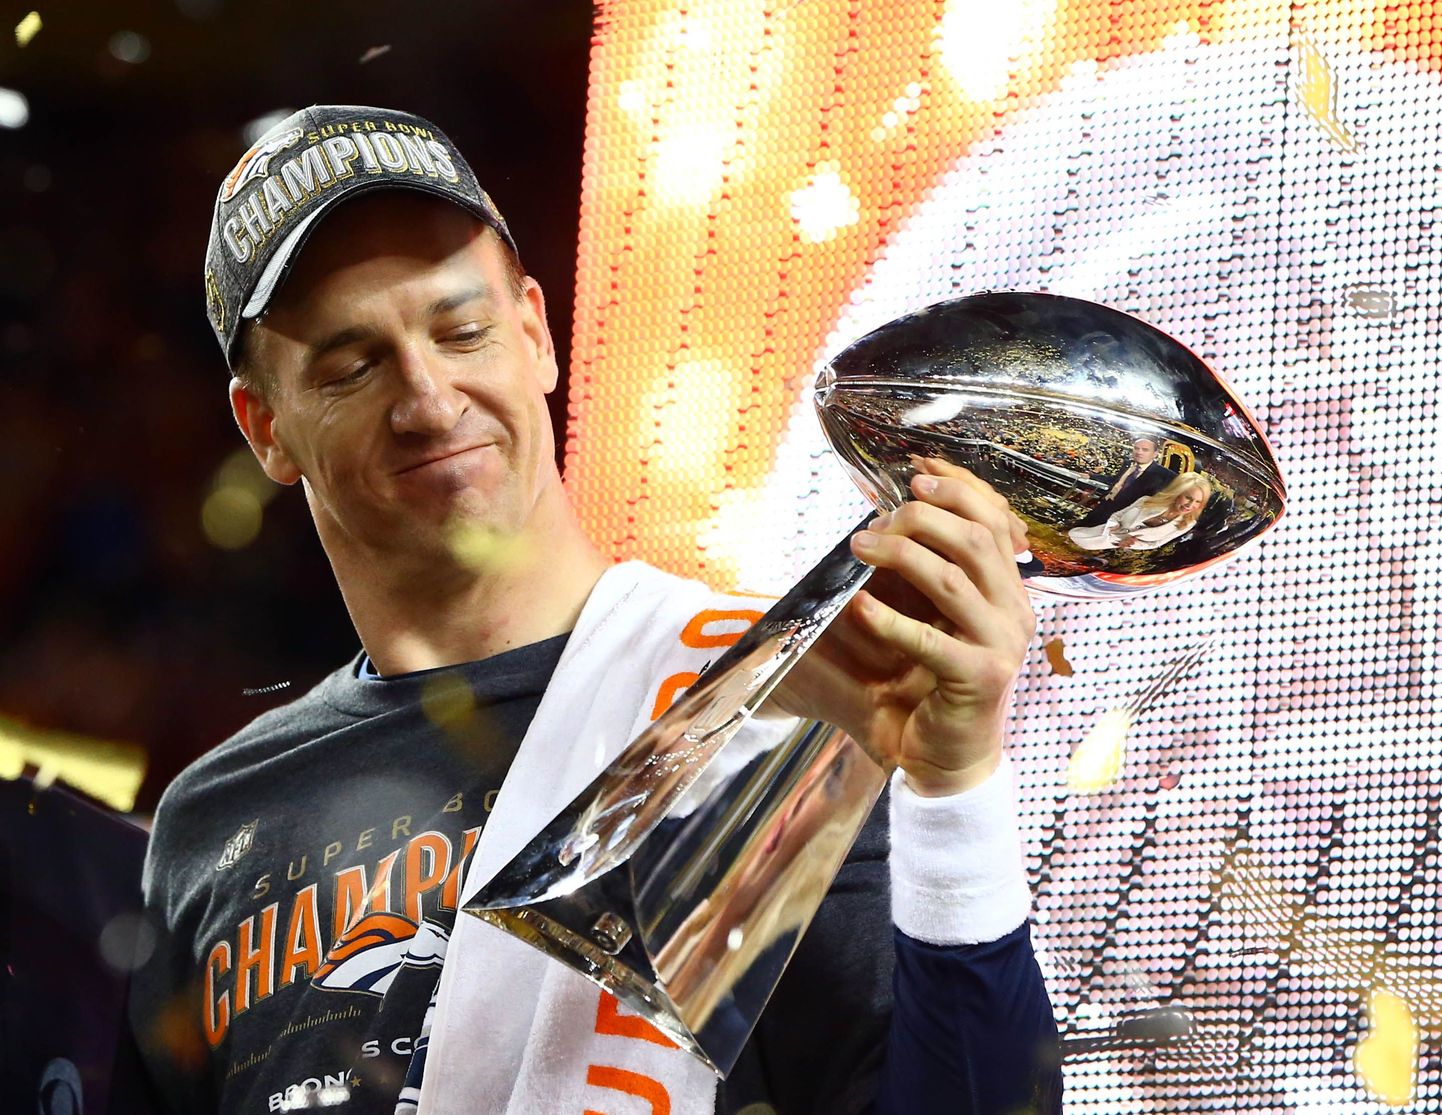 Lähipäevil ilmselt karjääri lõpust teatav Peyton Manning võib rahulikult Super Bowli võitjakarikat imetleda.